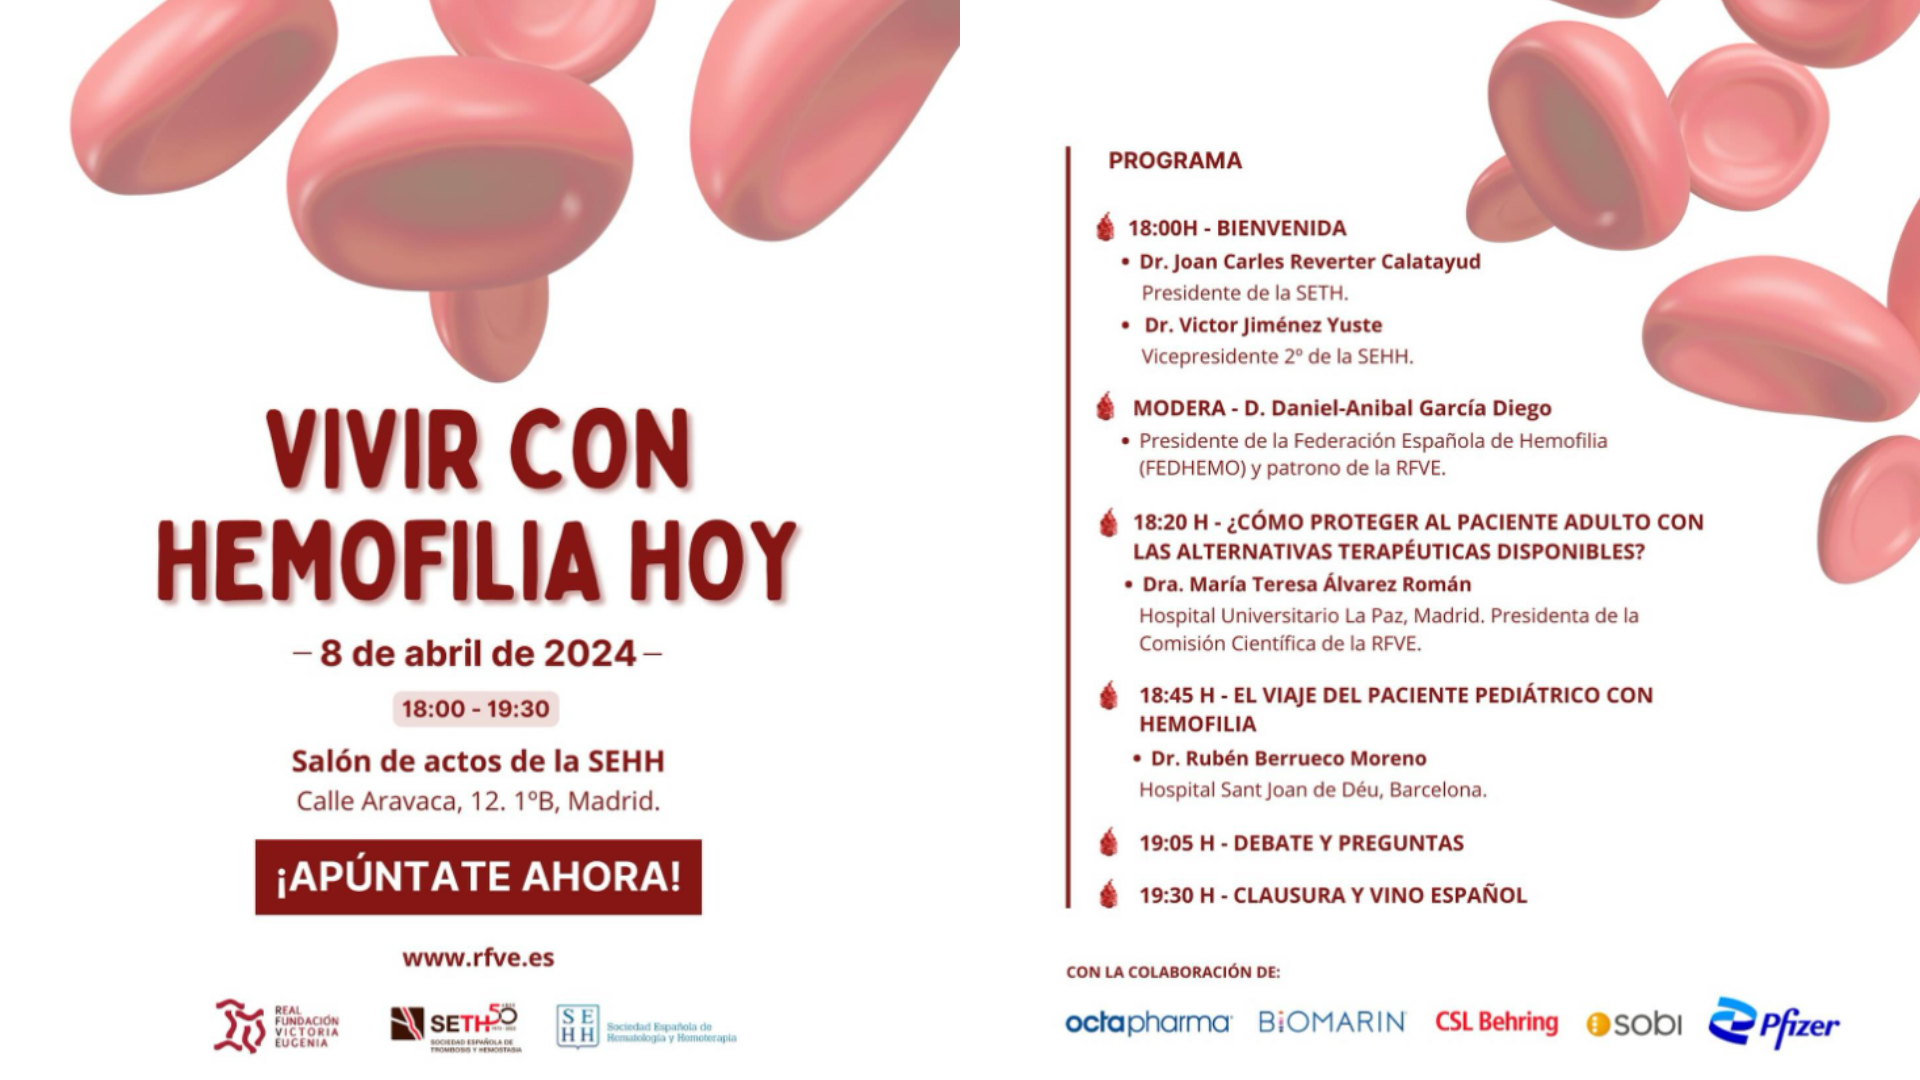 Daniel-Aníbal García asistirá de moderador a la jornada de presencial de RFVE: “Vivir con hemofilia hoy”